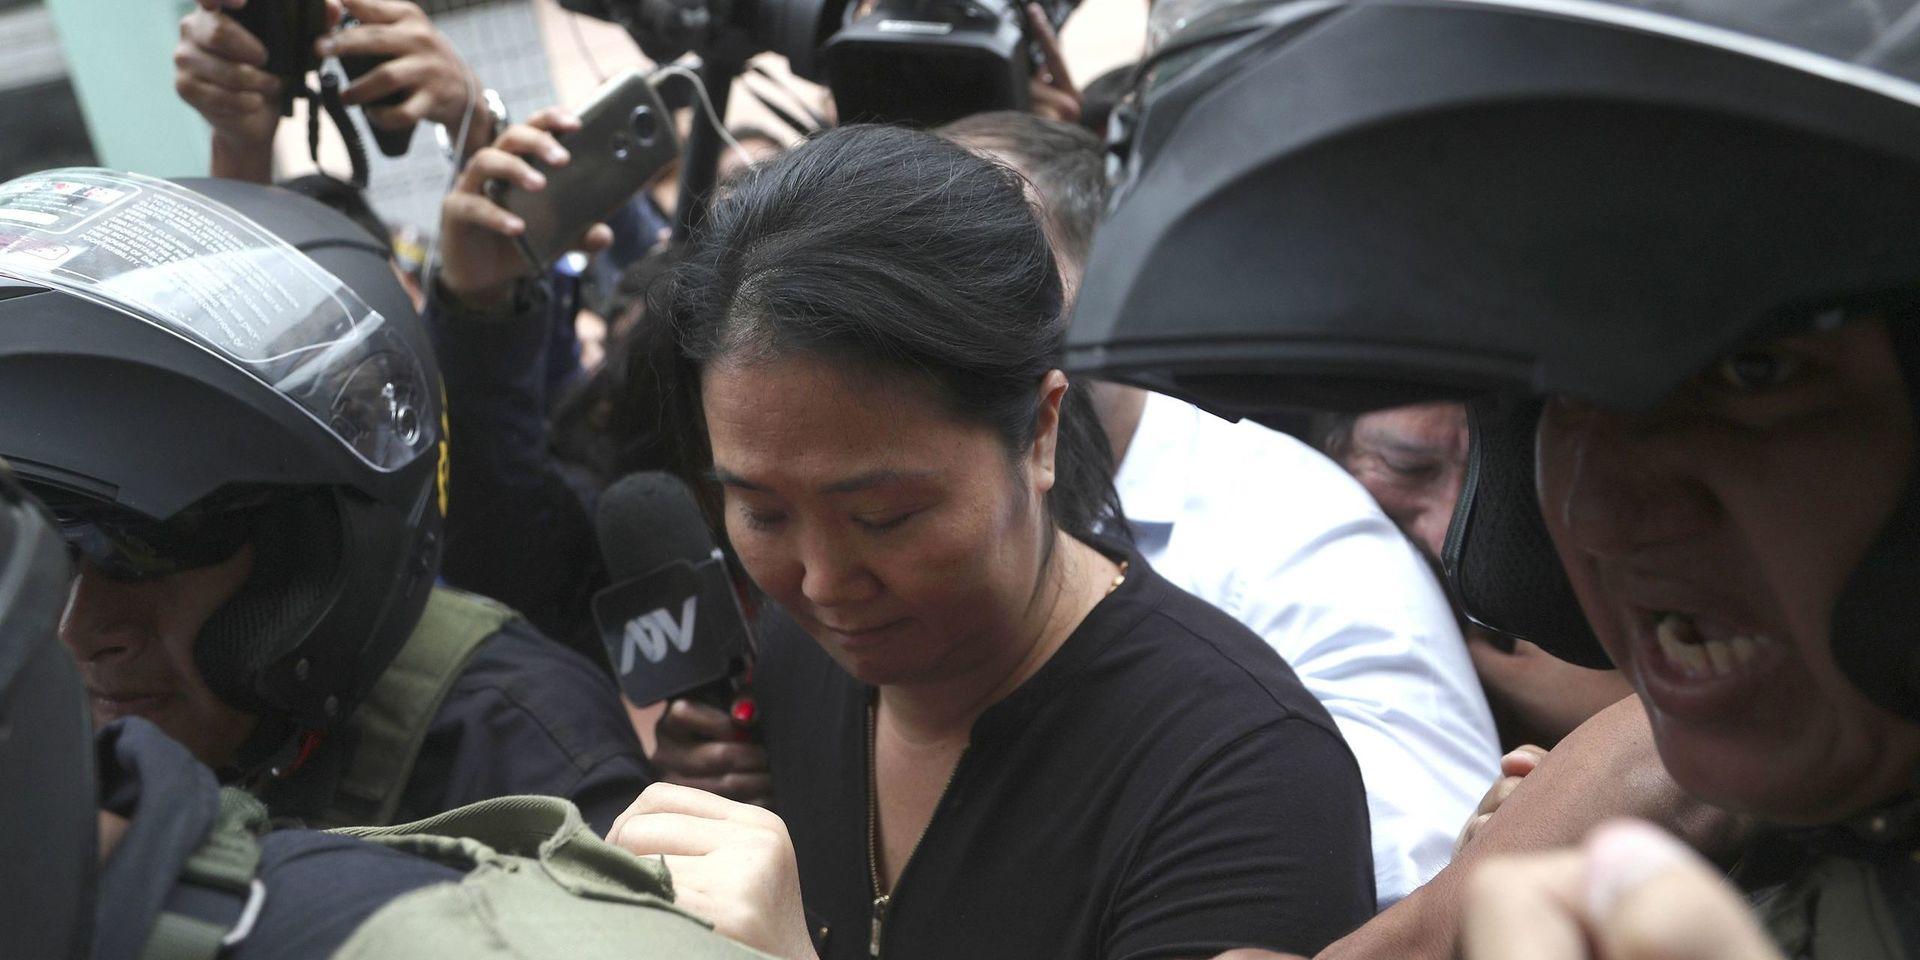 Keiko Fujimori, dotter till tidigare presidenten Alberto Fujimori, eskorteras till domstolsbyggnaden. 